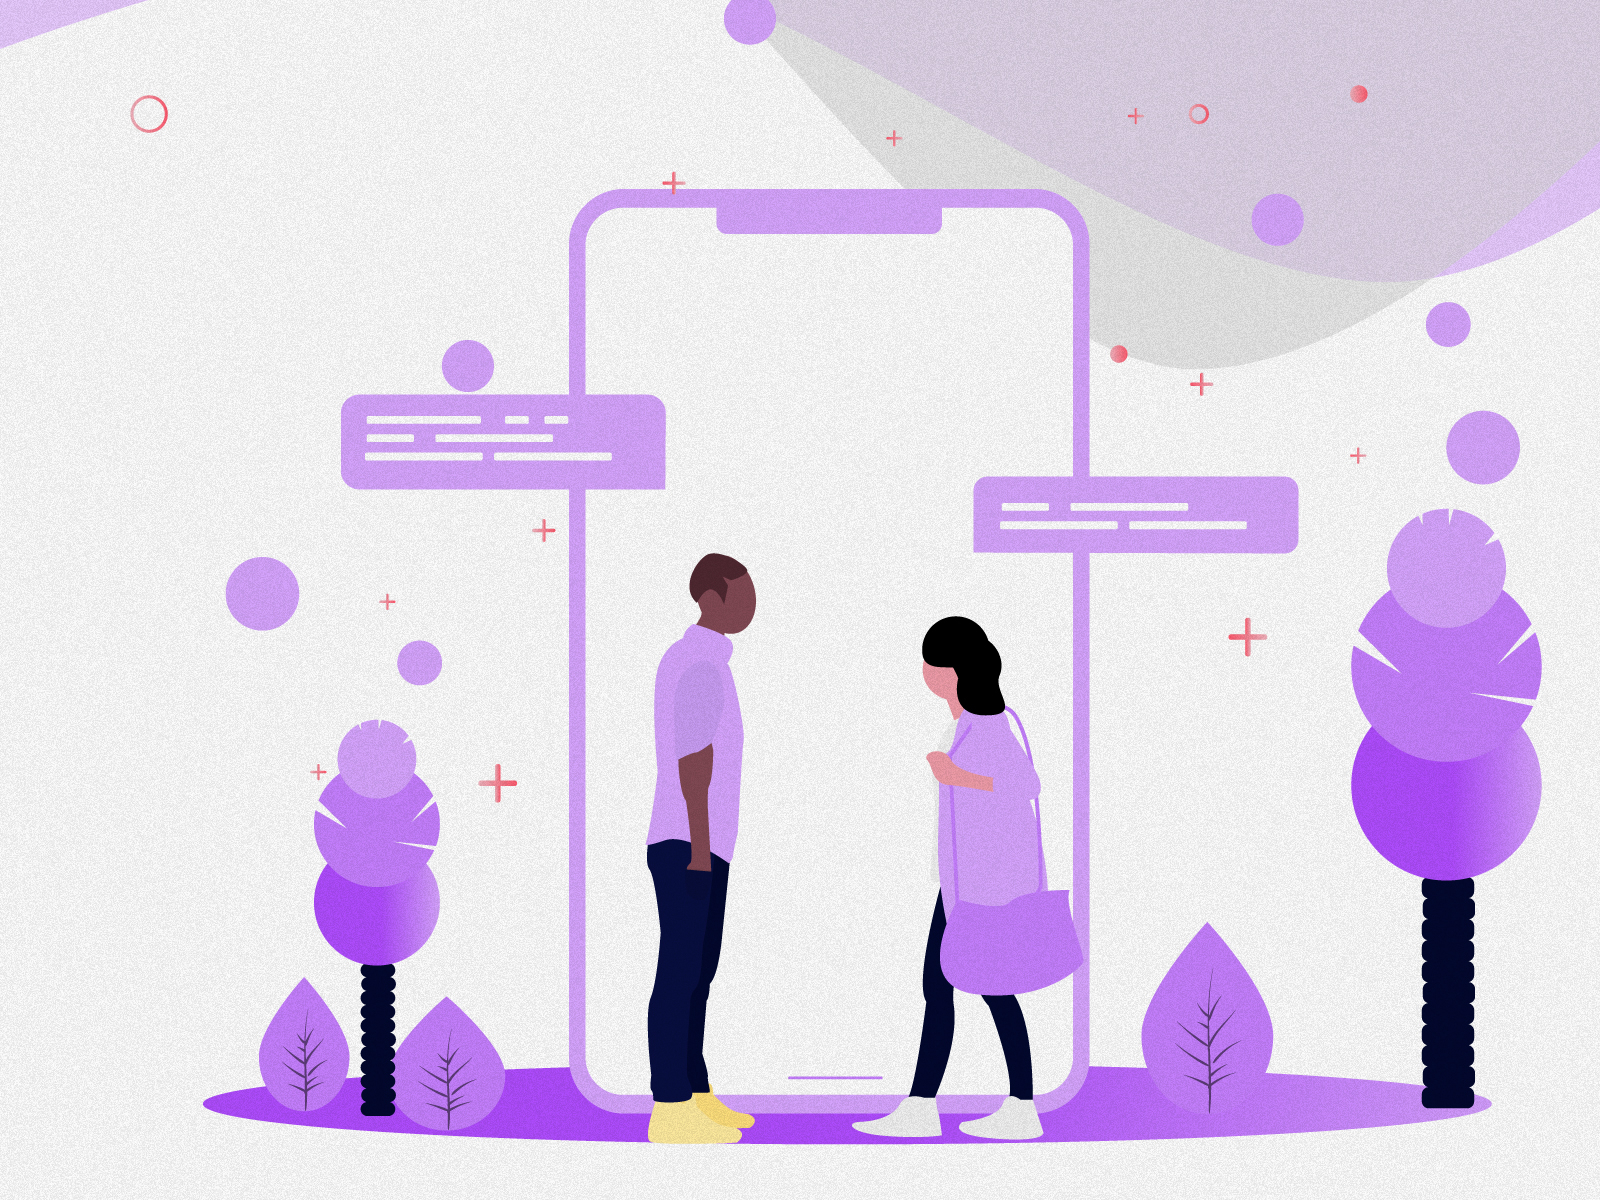 Let’s Link chat couple design illustration love meet phone purple text